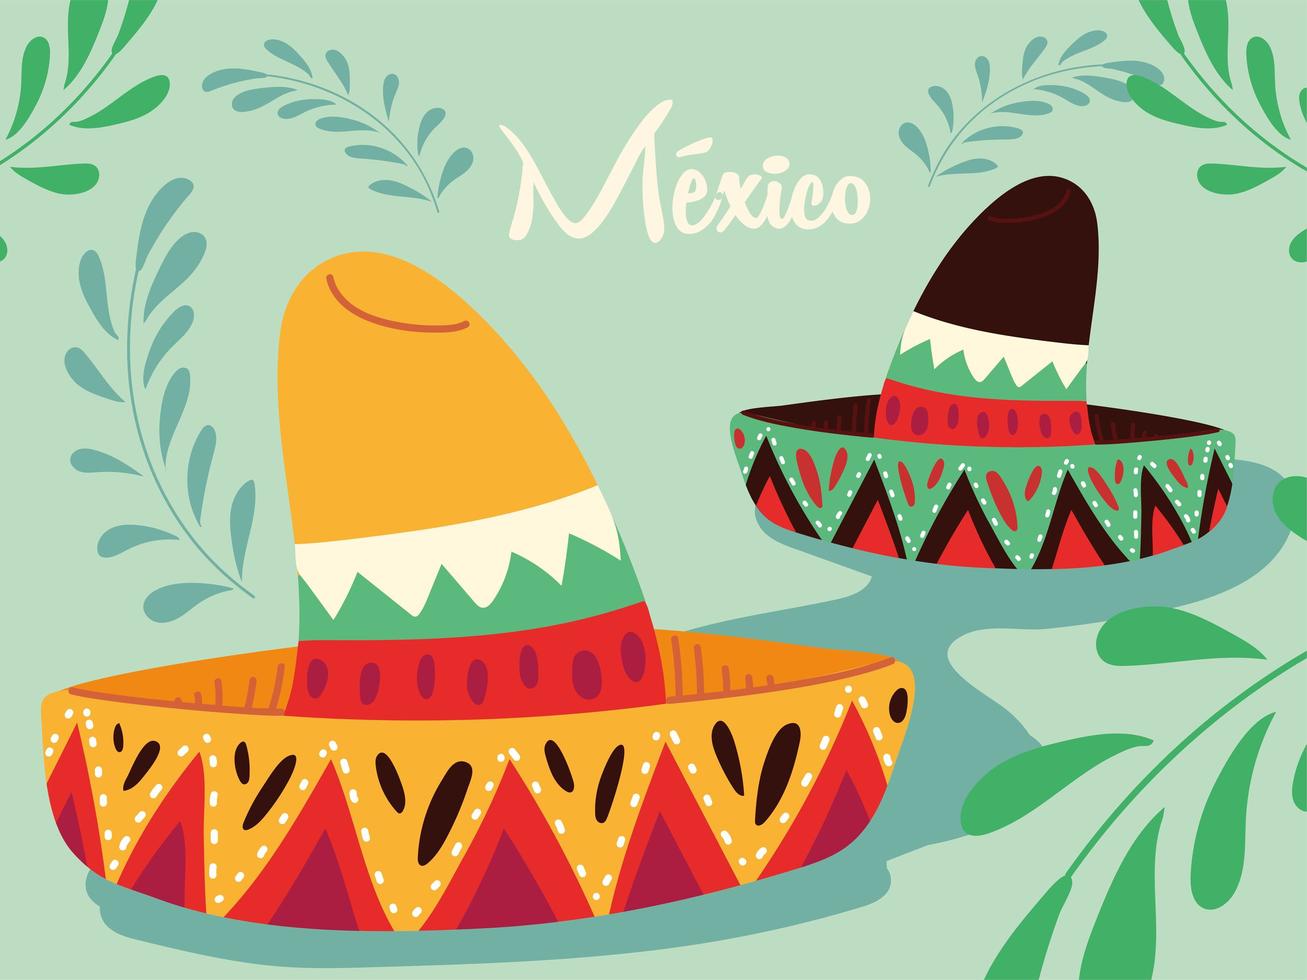 étiquette mexique avec des chapeaux mexicains, affiche vecteur